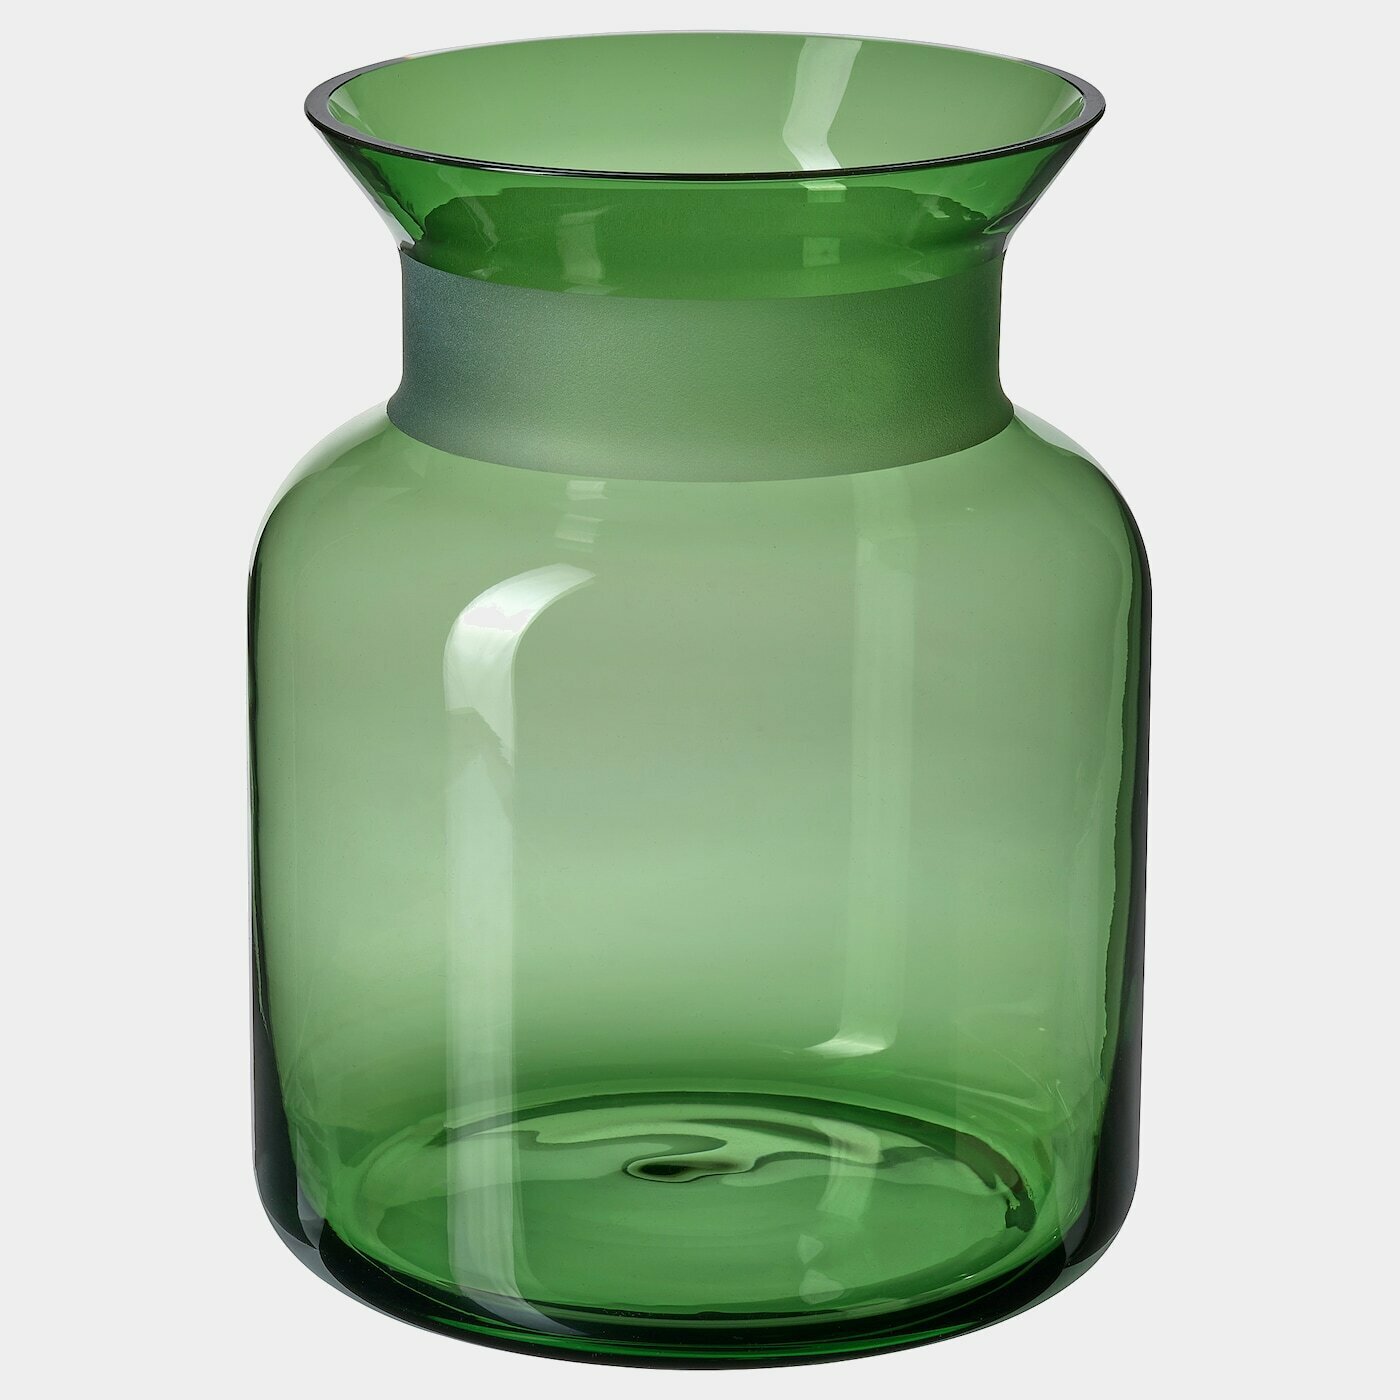 VINTER 2021 Vase  -  - Möbel Ideen für dein Zuhause von Home Trends. Möbel Trends von Social Media Influencer für dein Skandi Zuhause.